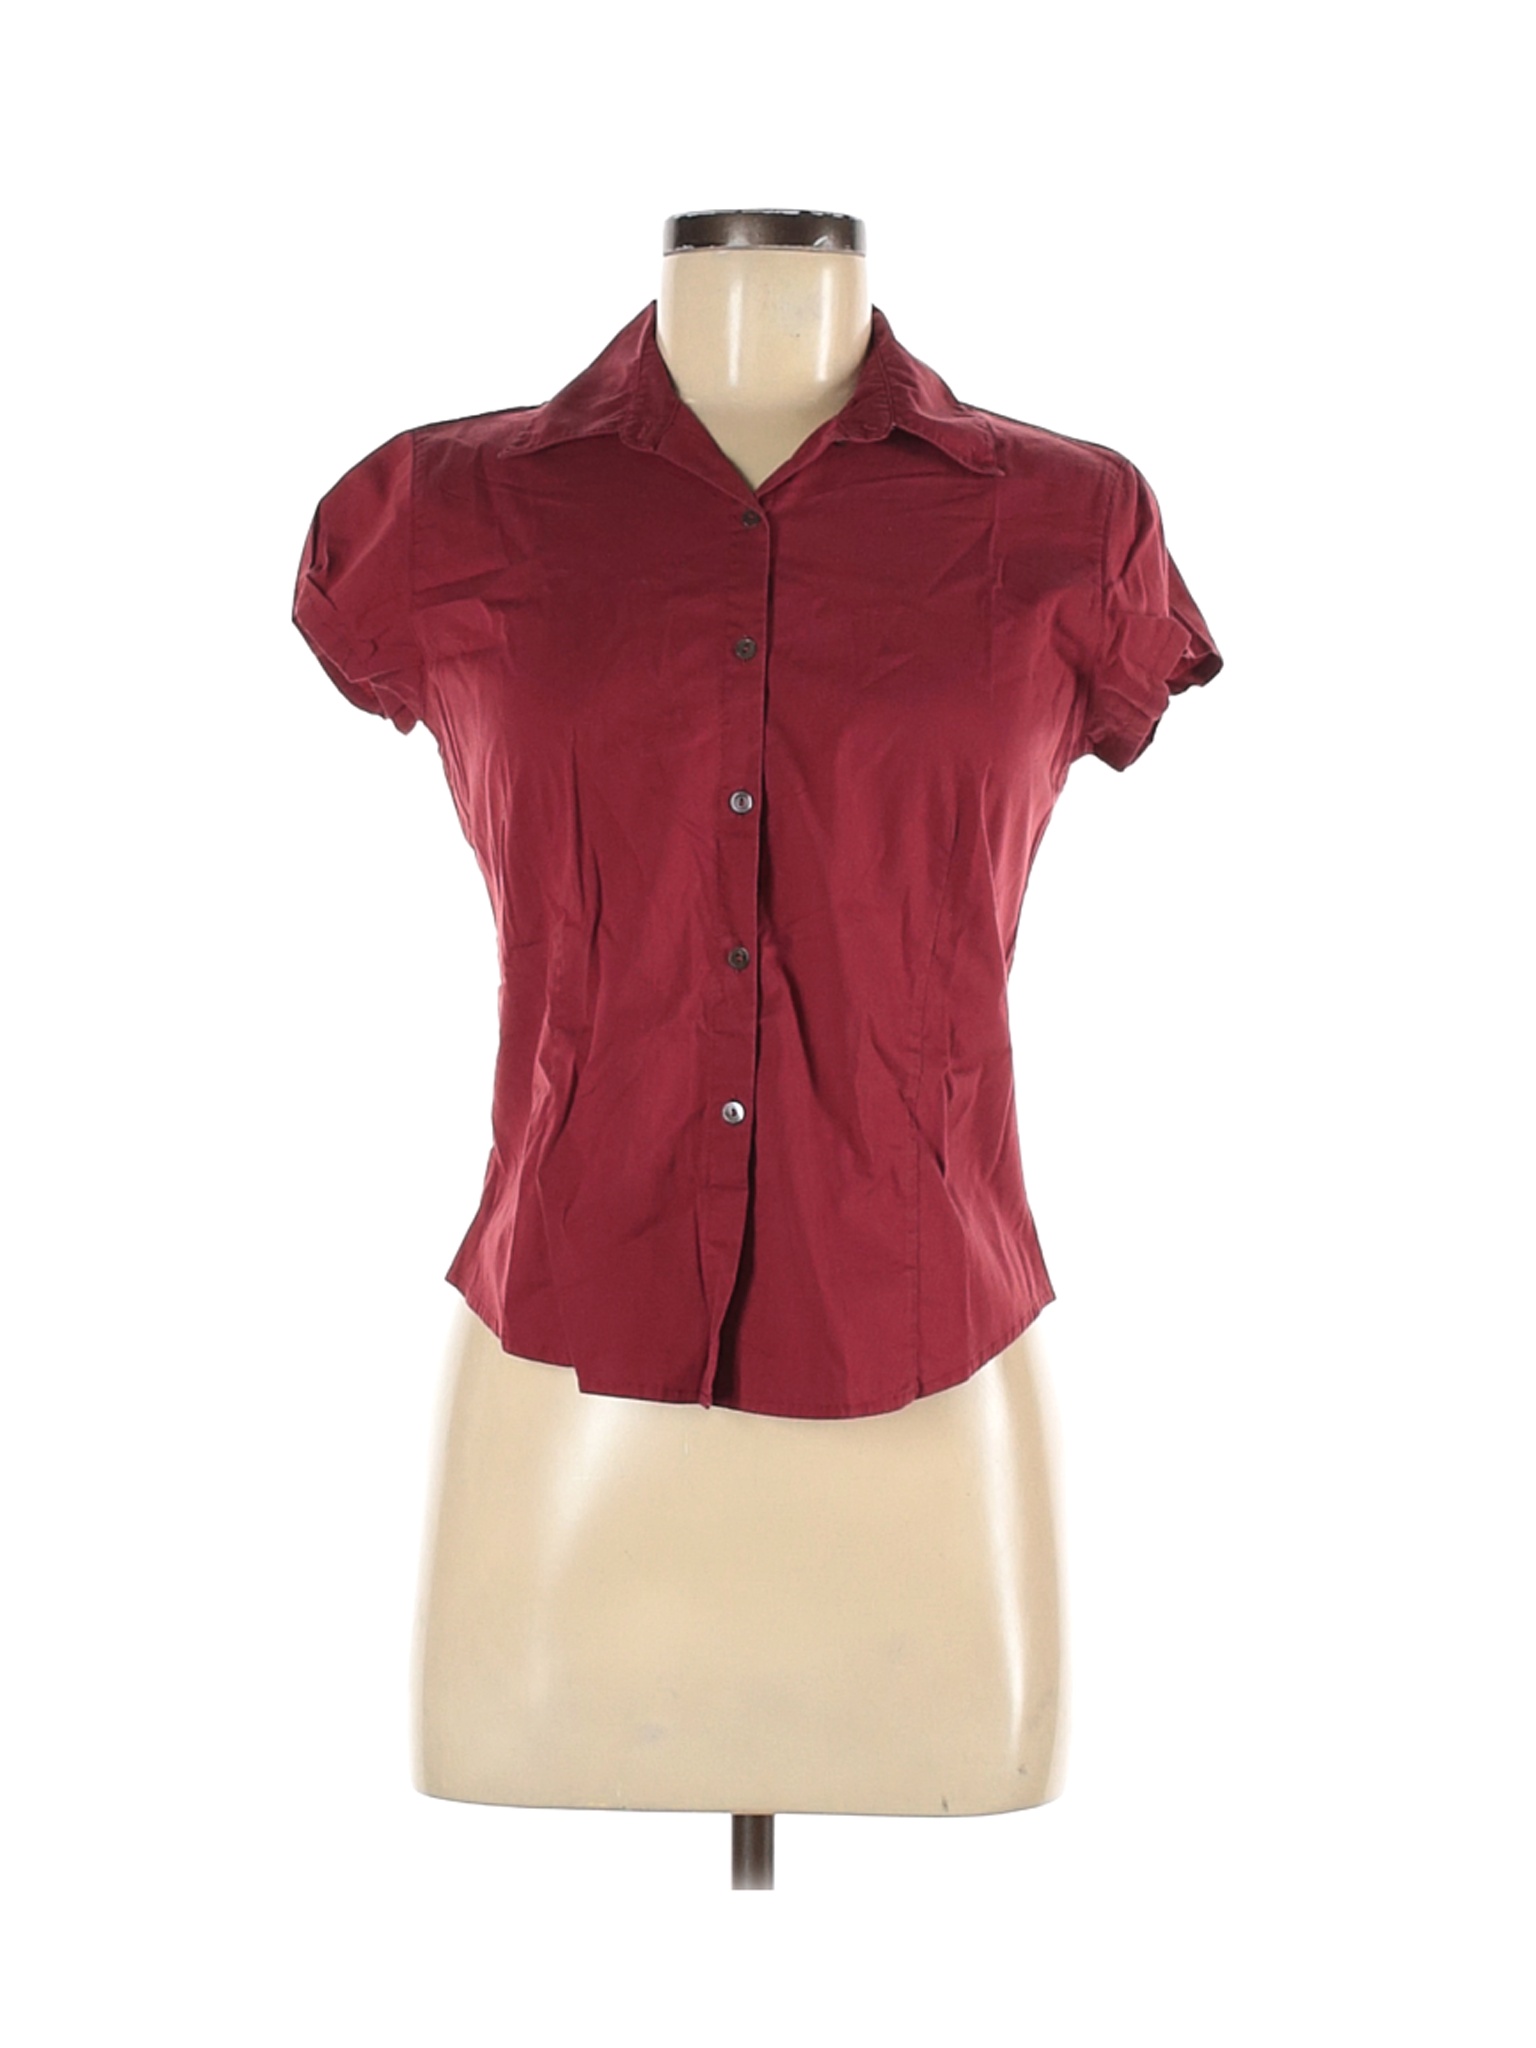 short sleeve red button down shirt women